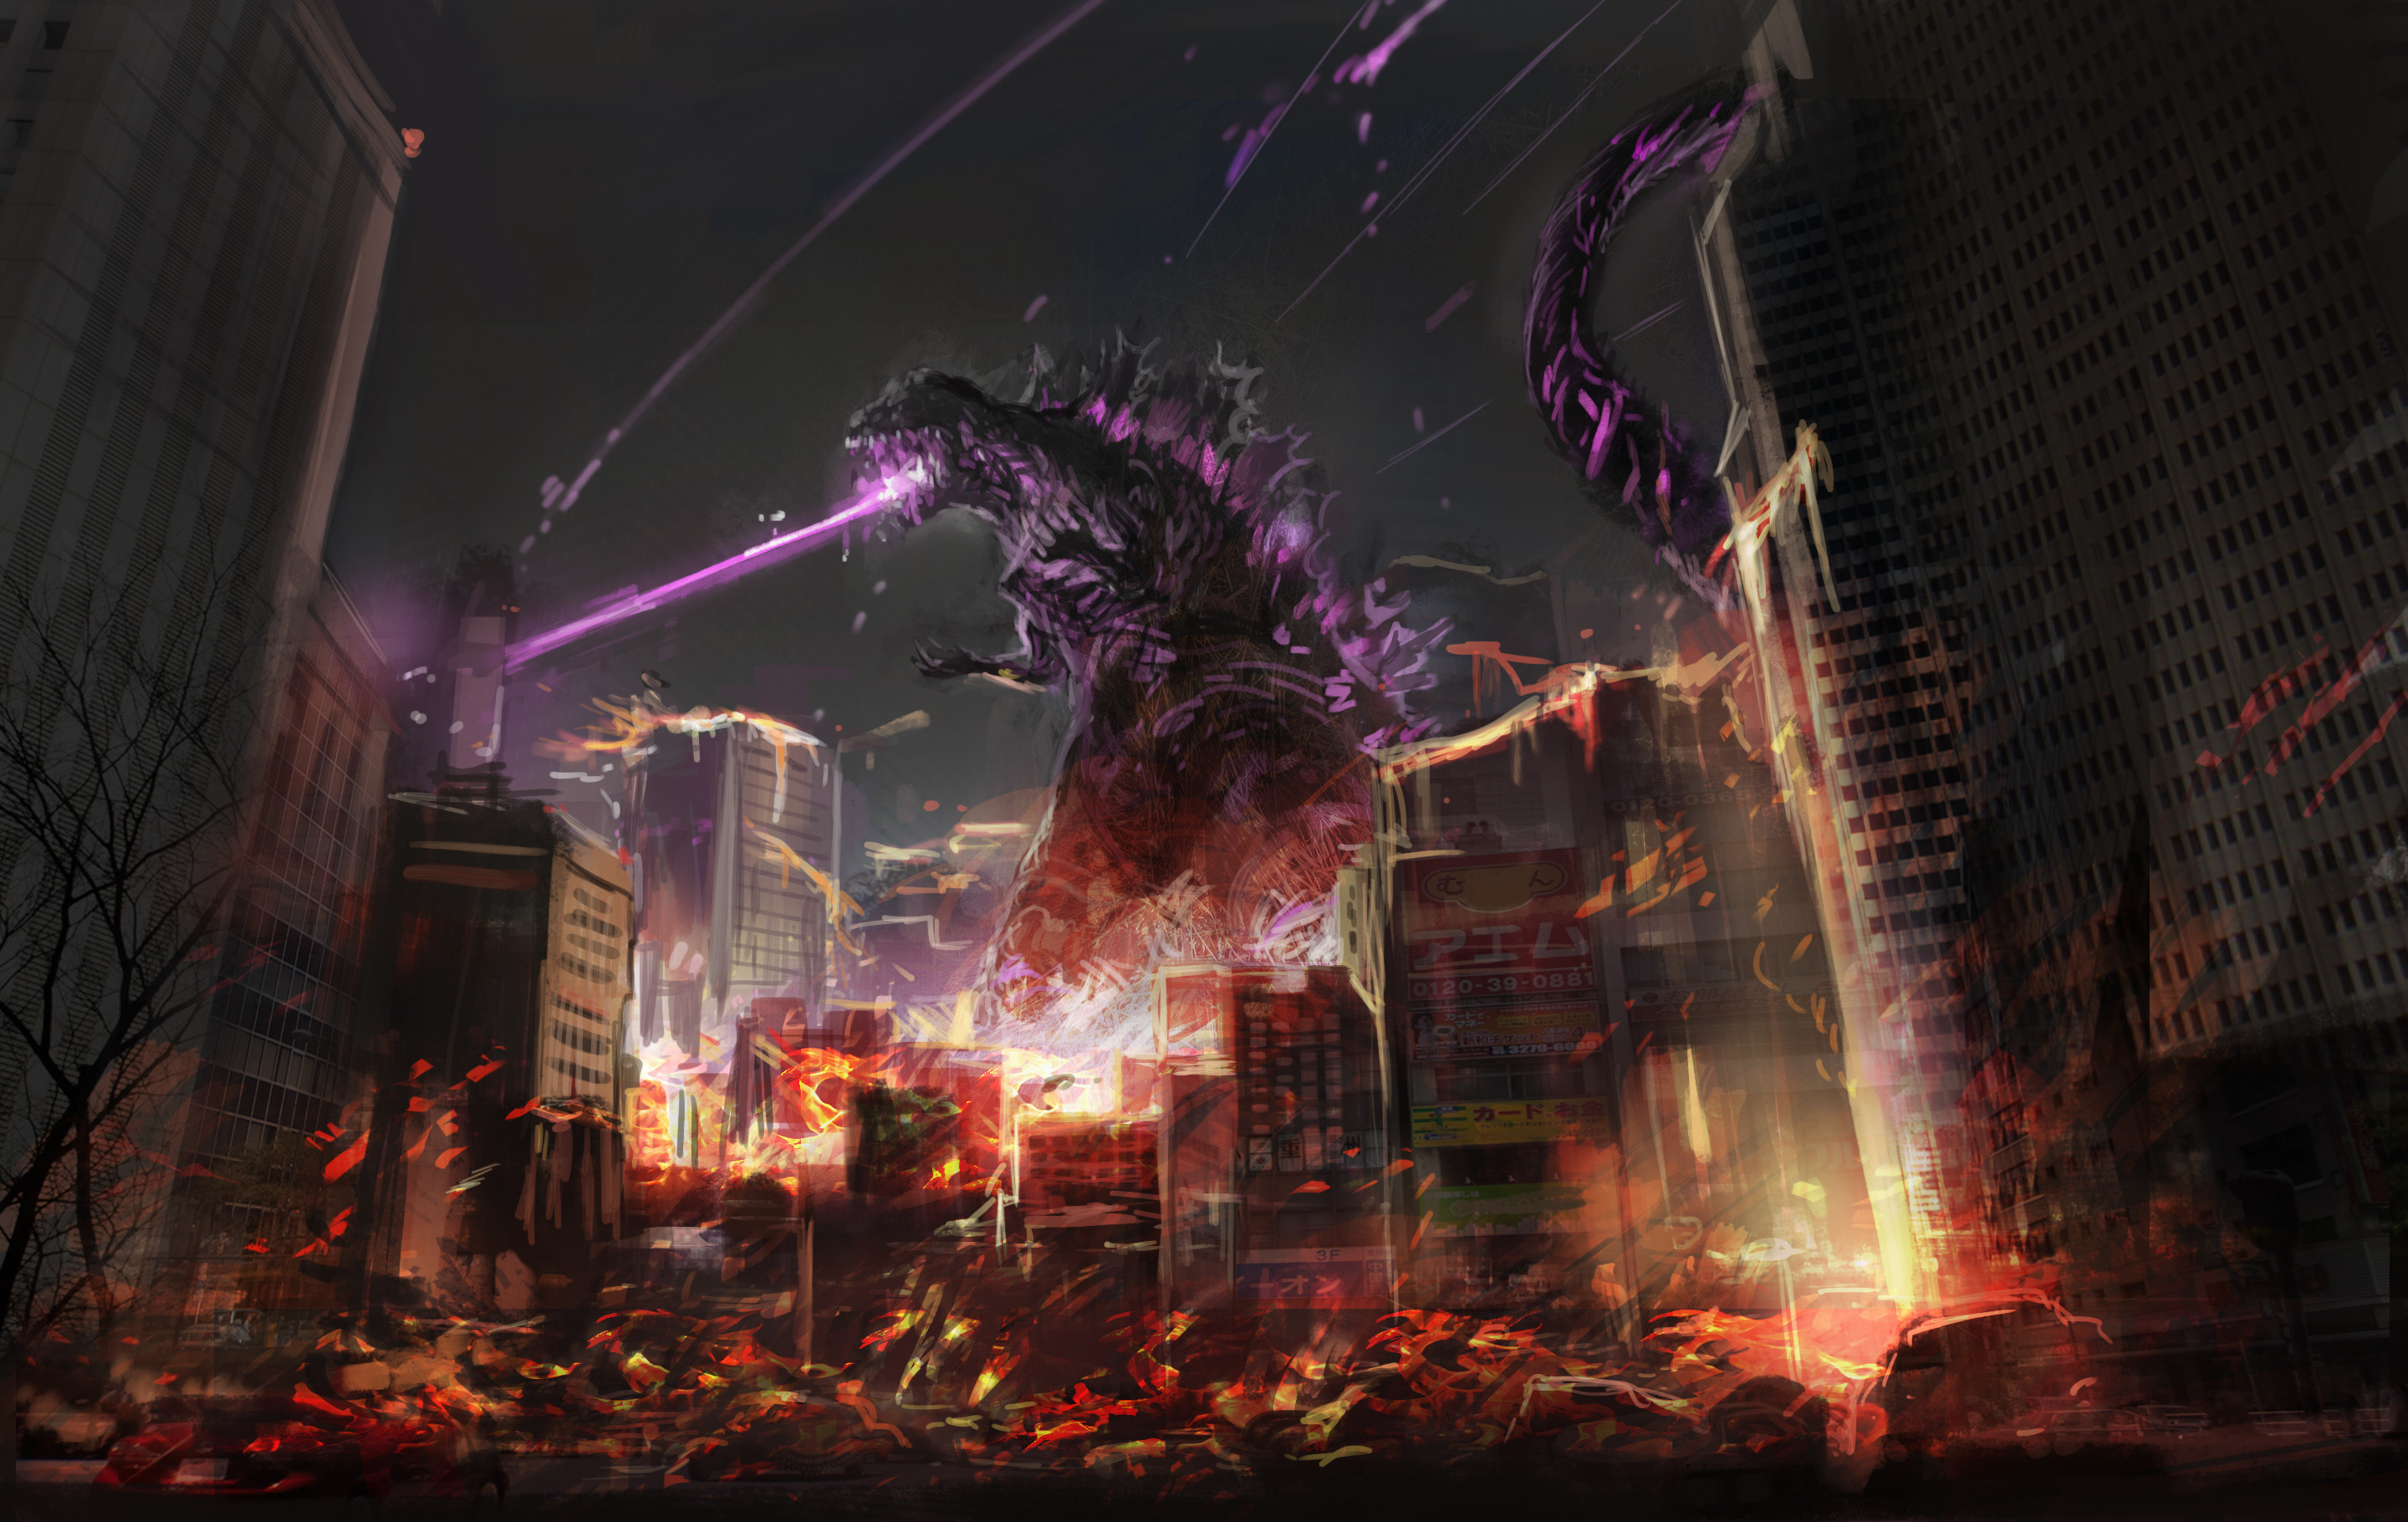 2880x1820 Godzilla HD Wallpaper | Hintergrund |  | ID:735001 - Wallpaper  Abyss